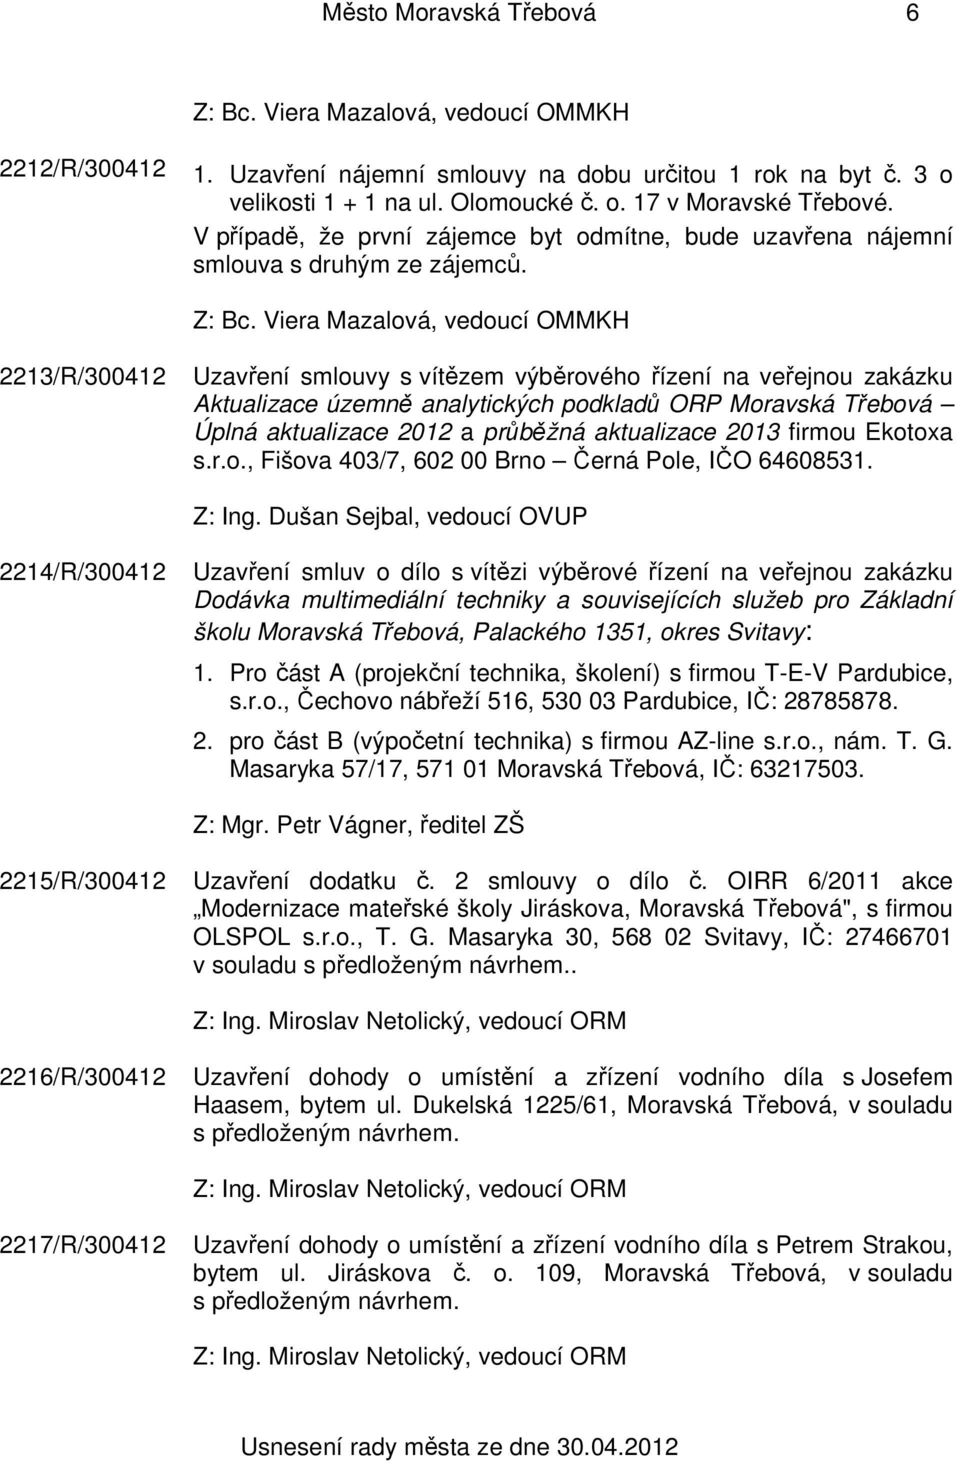 2213/R/300412 Uzavření smlouvy s vítězem výběrového řízení na veřejnou zakázku Aktualizace územně analytických podkladů ORP Moravská Třebová Úplná aktualizace 2012 a průběžná aktualizace 2013 firmou